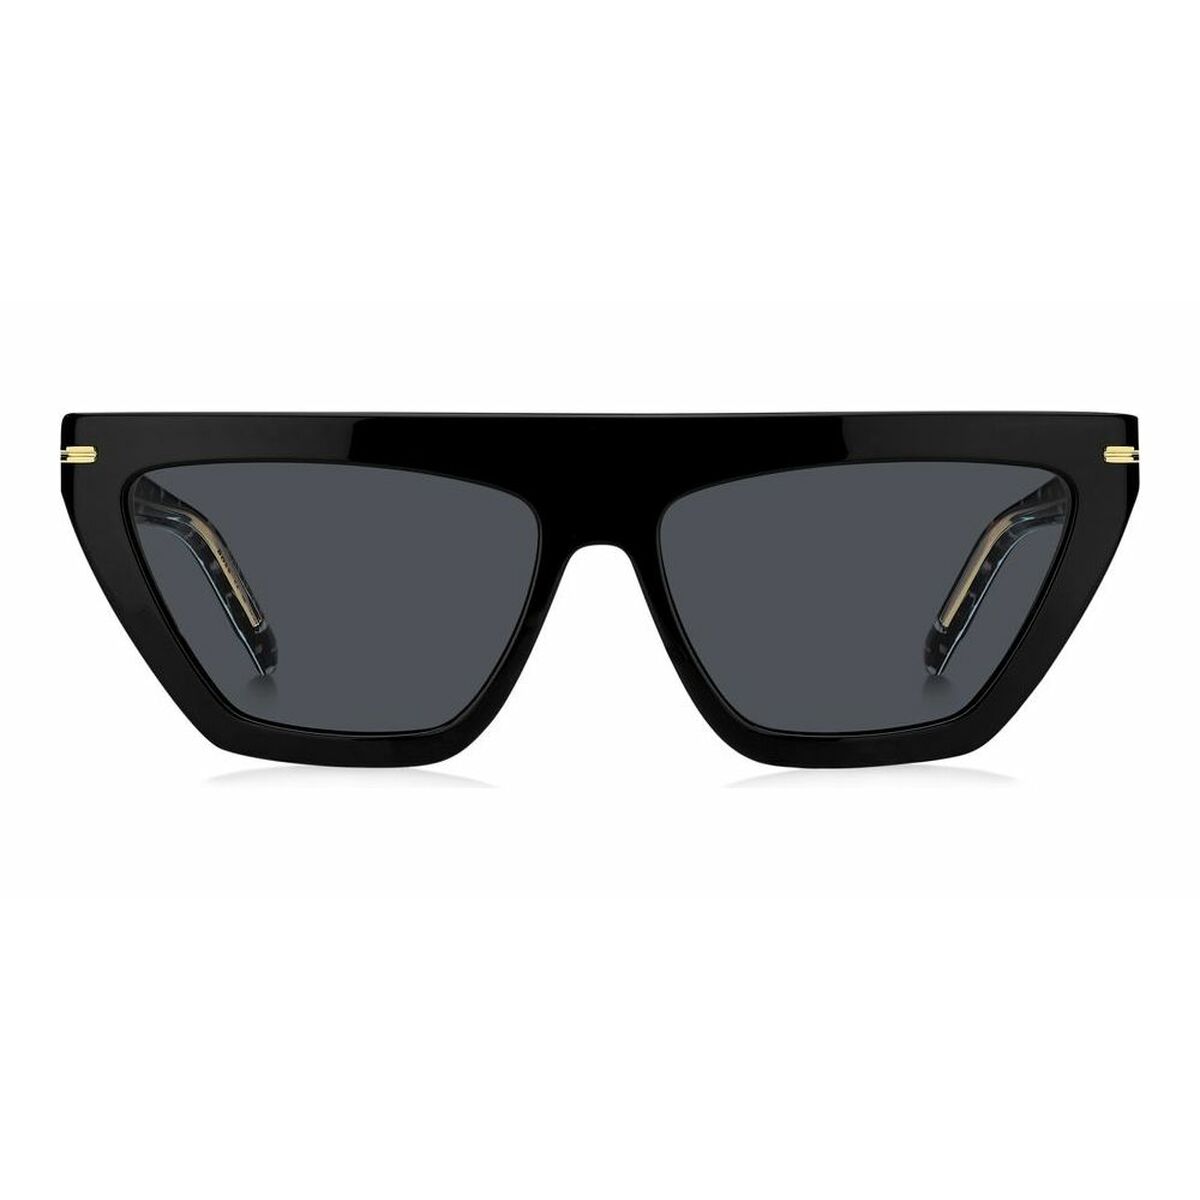 Kaufe Damensonnenbrille Hugo Boss BOSS 1609_S bei AWK Flagship um € 242.00